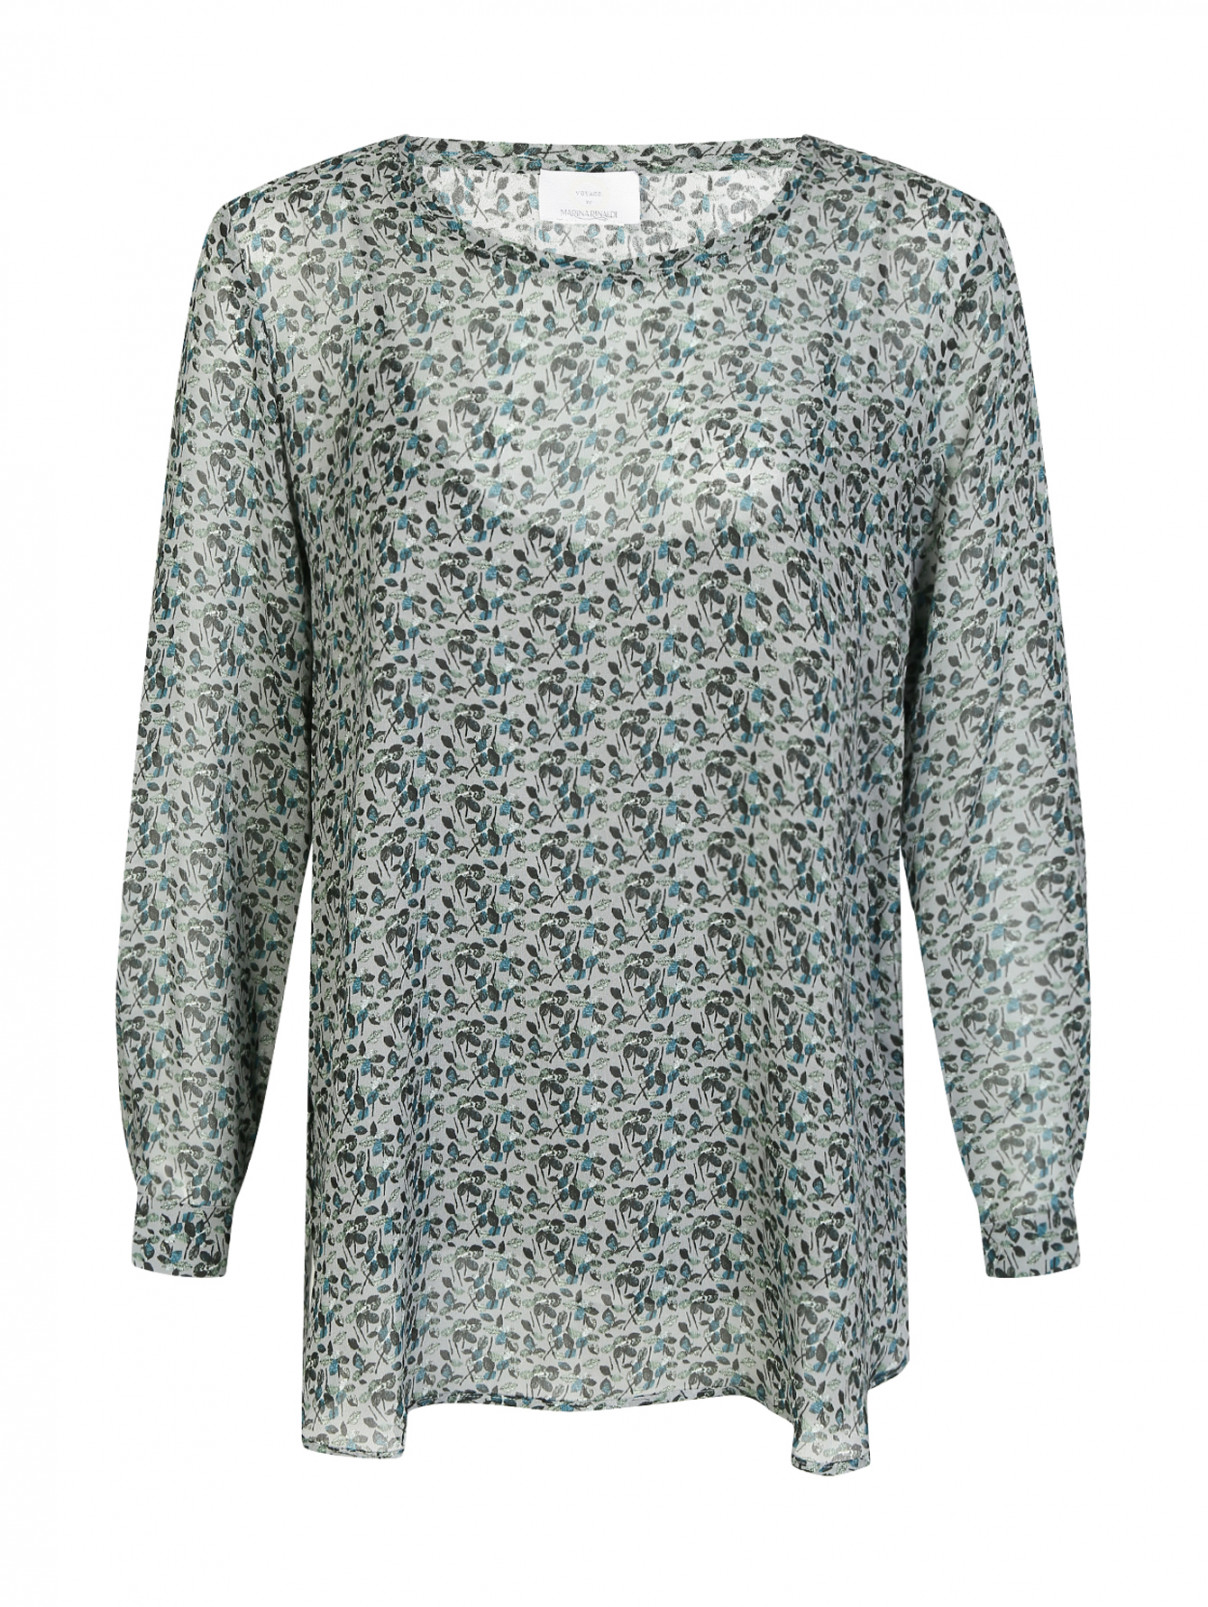 Полупрозрачная блуза с узором Marina Rinaldi  –  Общий вид  – Цвет:  Узор